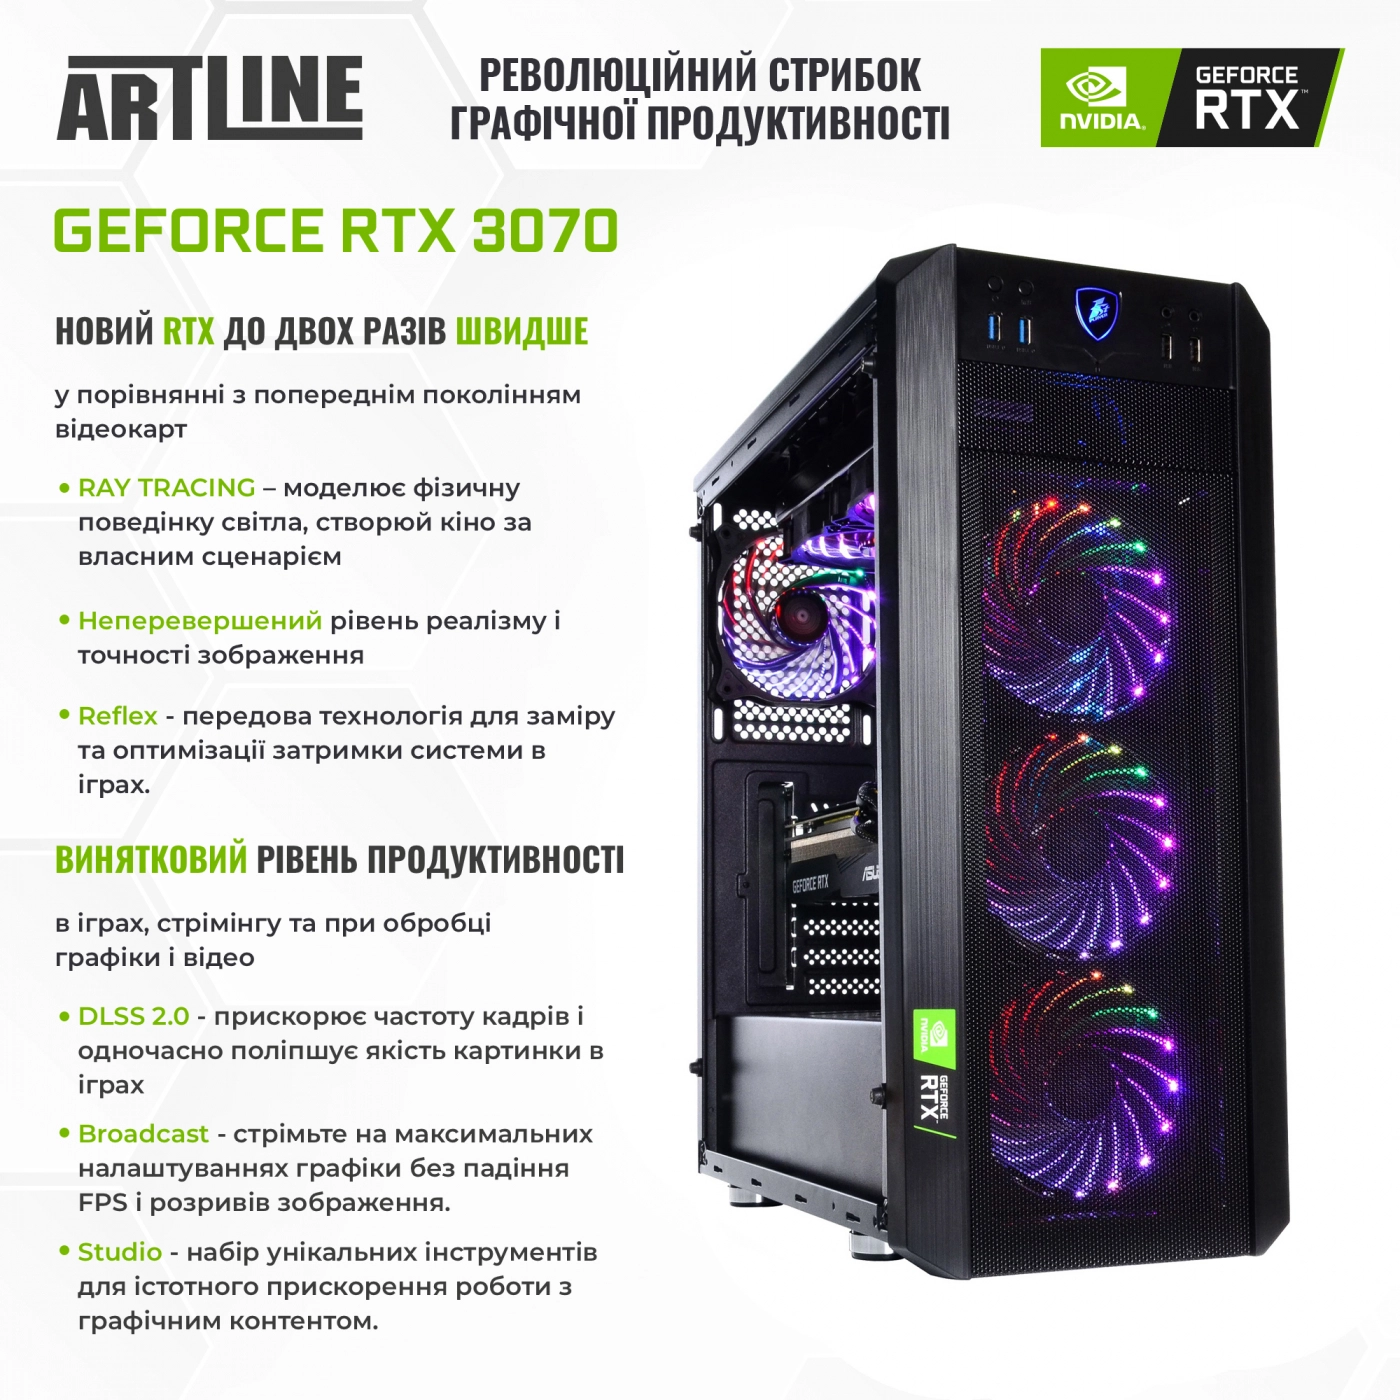 Купить Компьютер ARTLINE Gaming X93v20 - фото 3